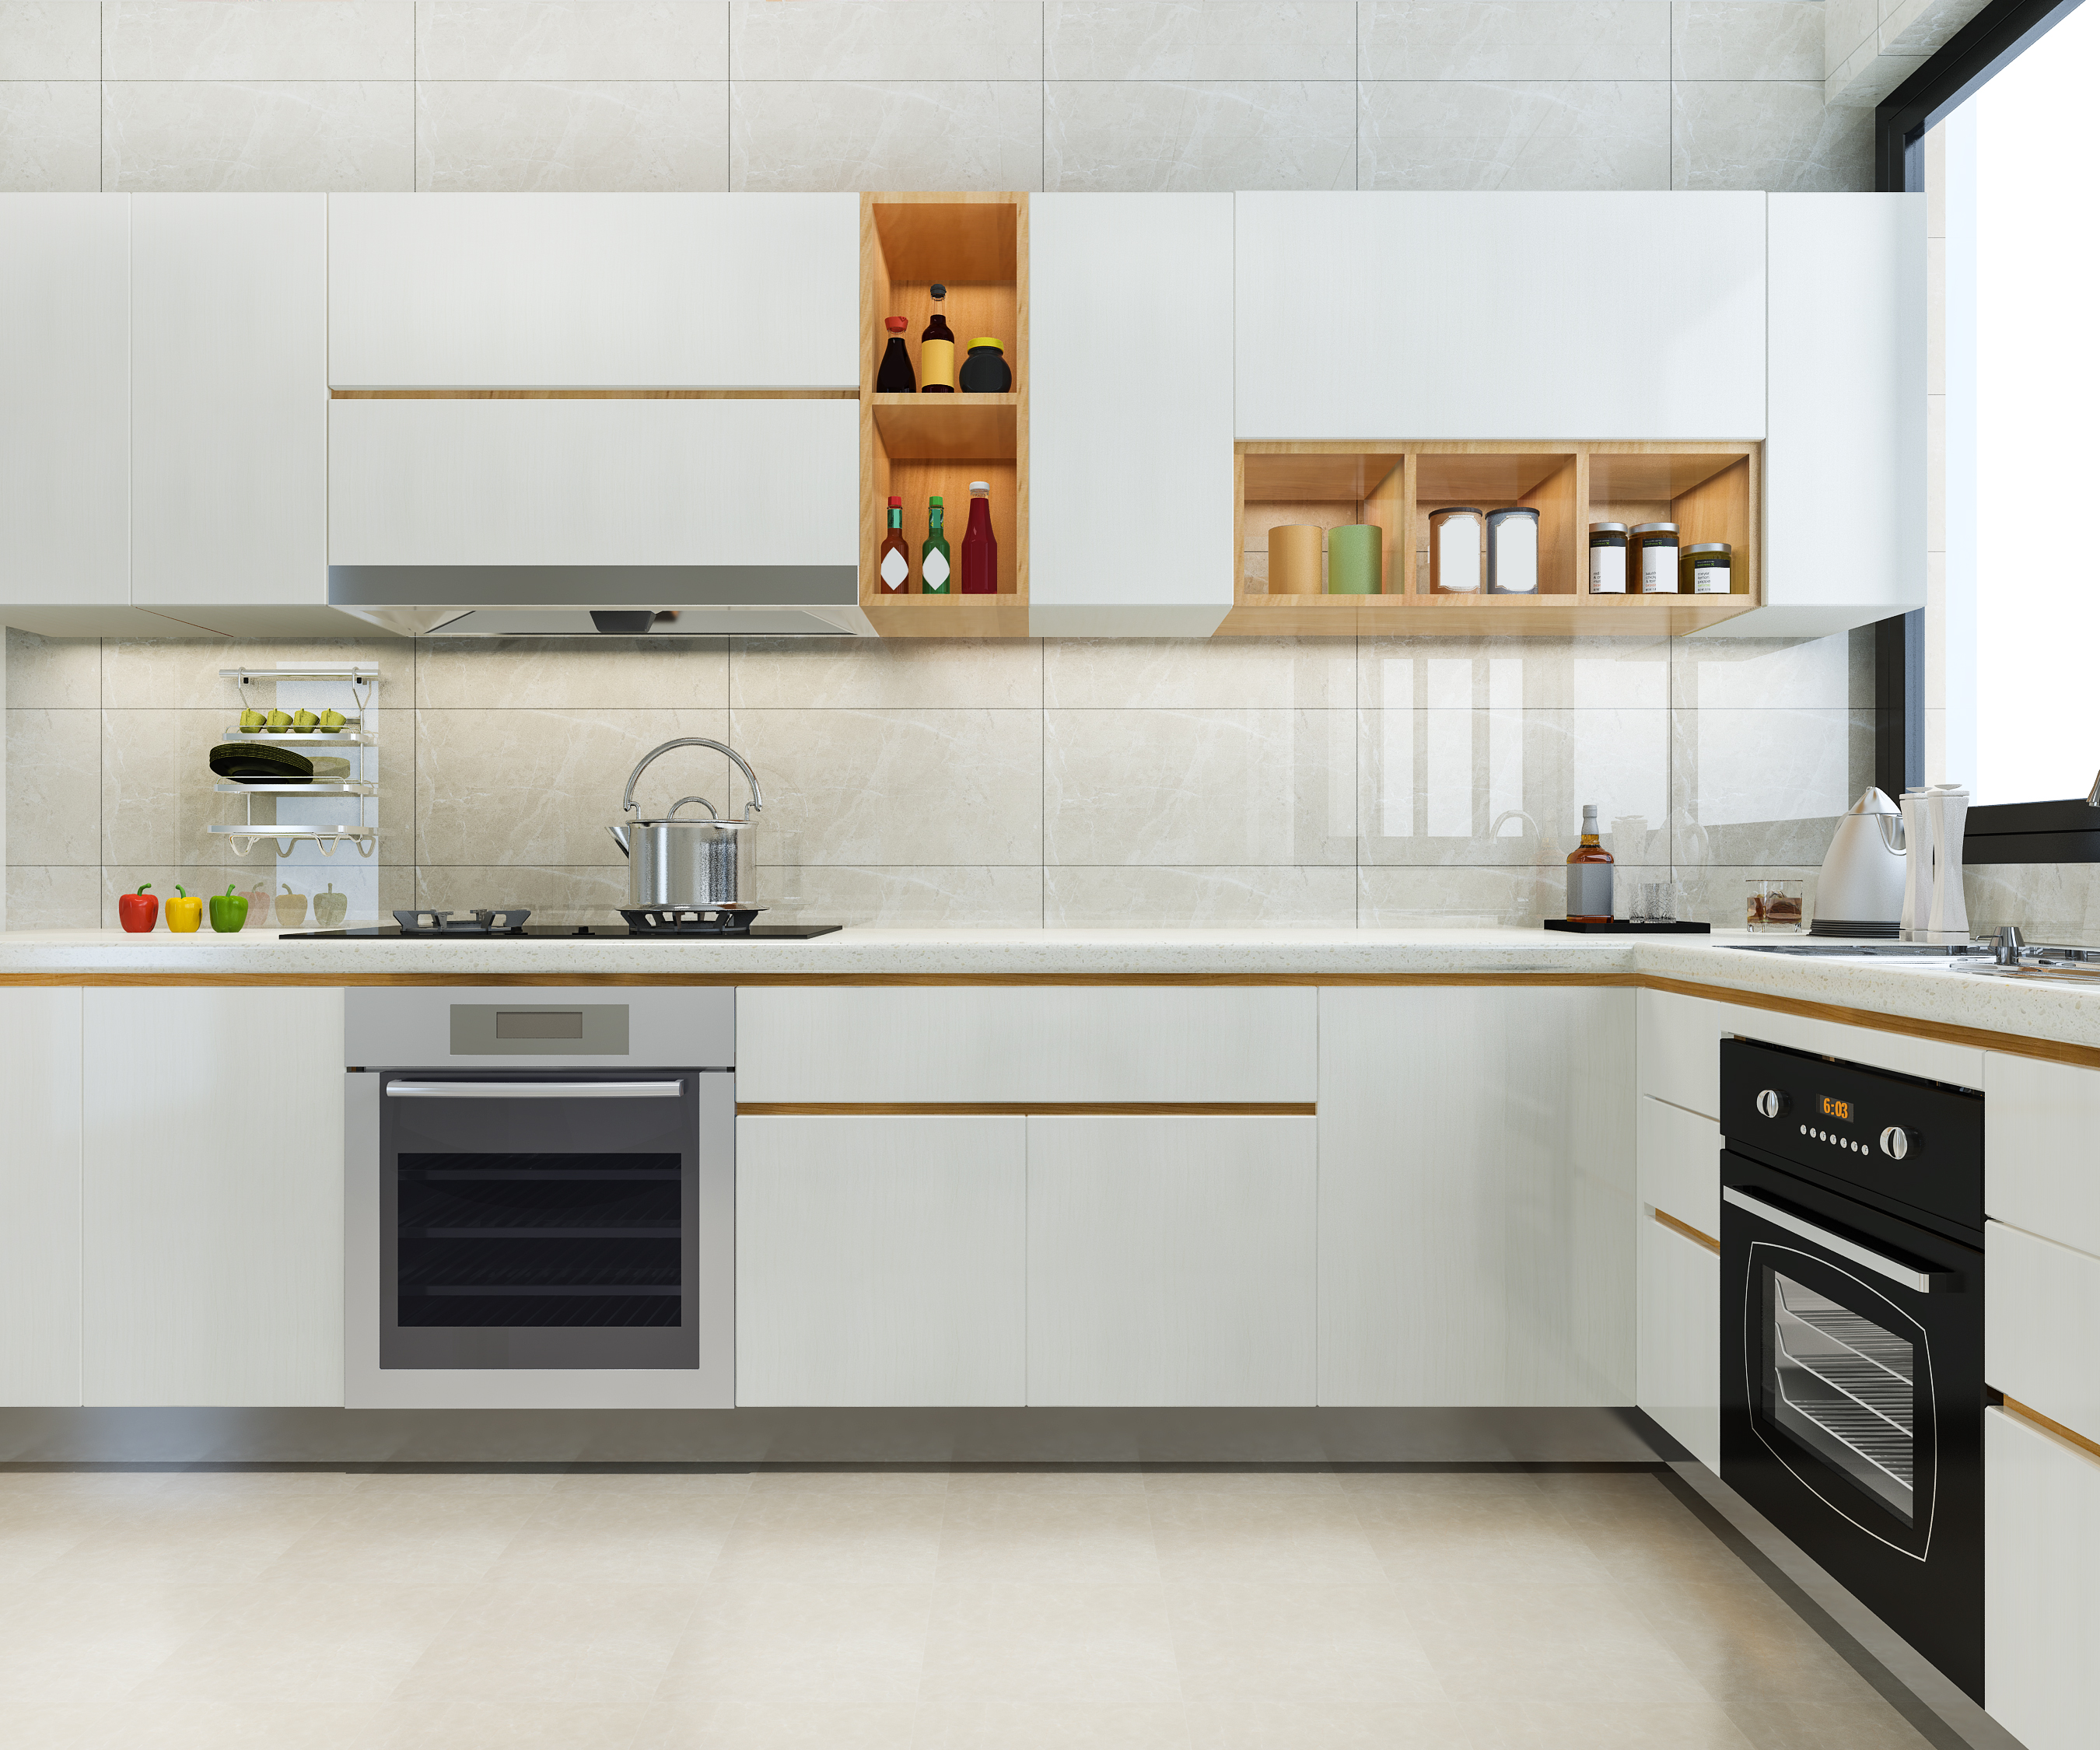 Modular kitchen Designs